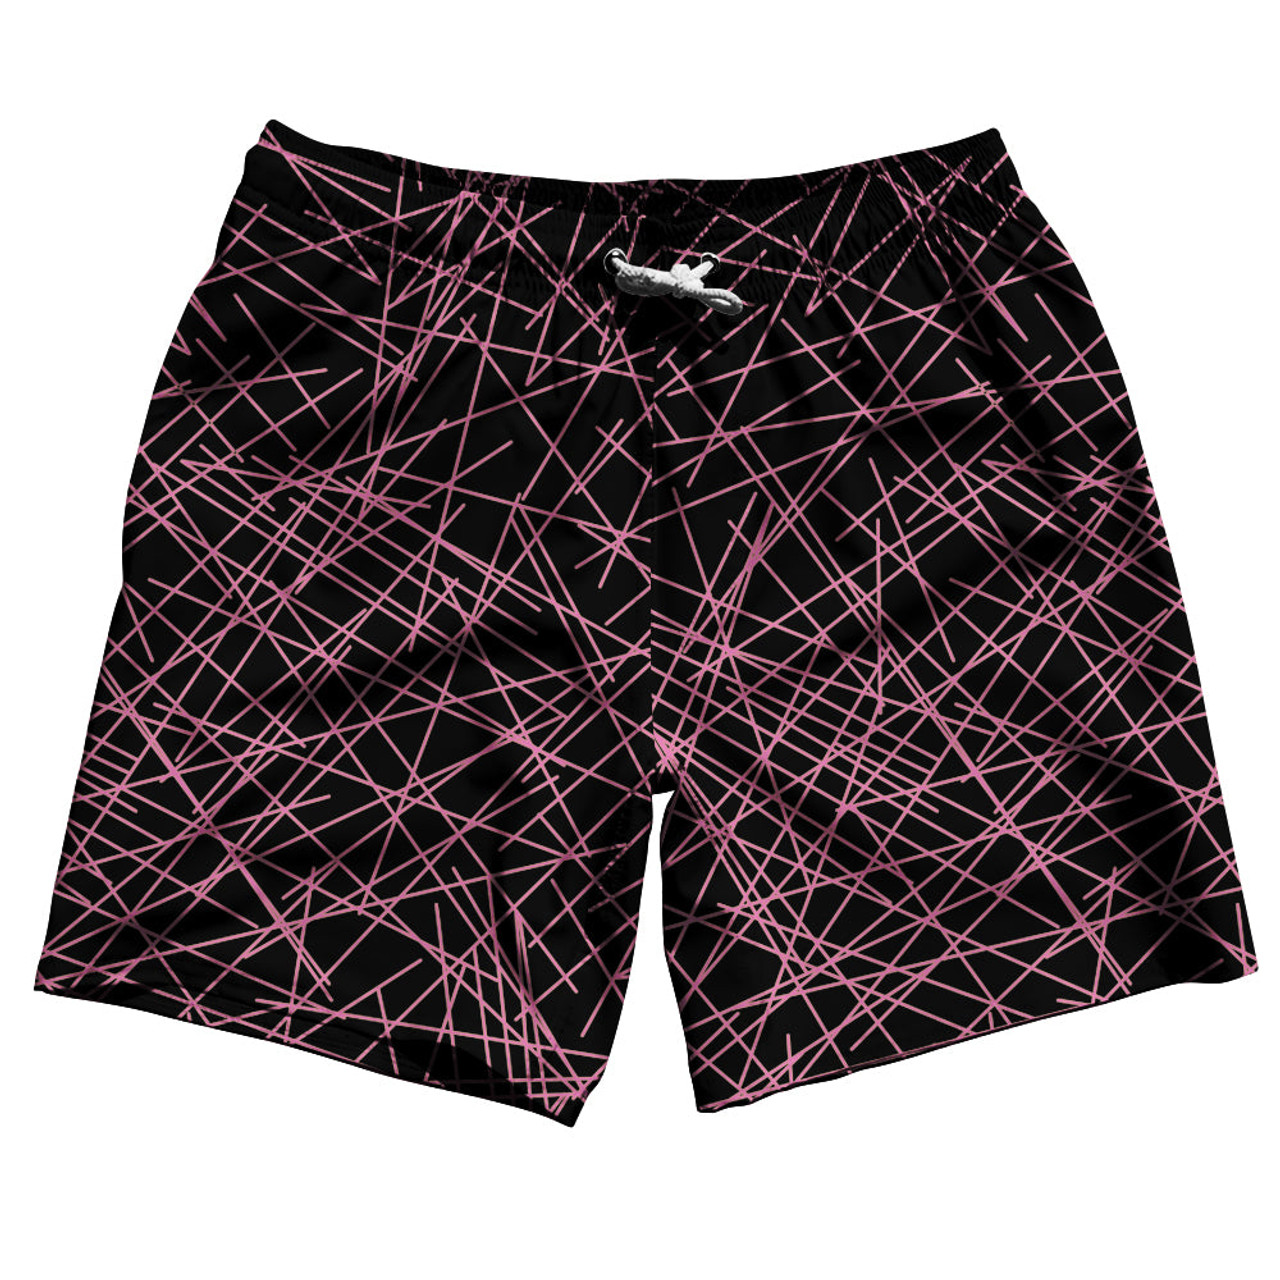 Series 7 Shorts - Black/Pink